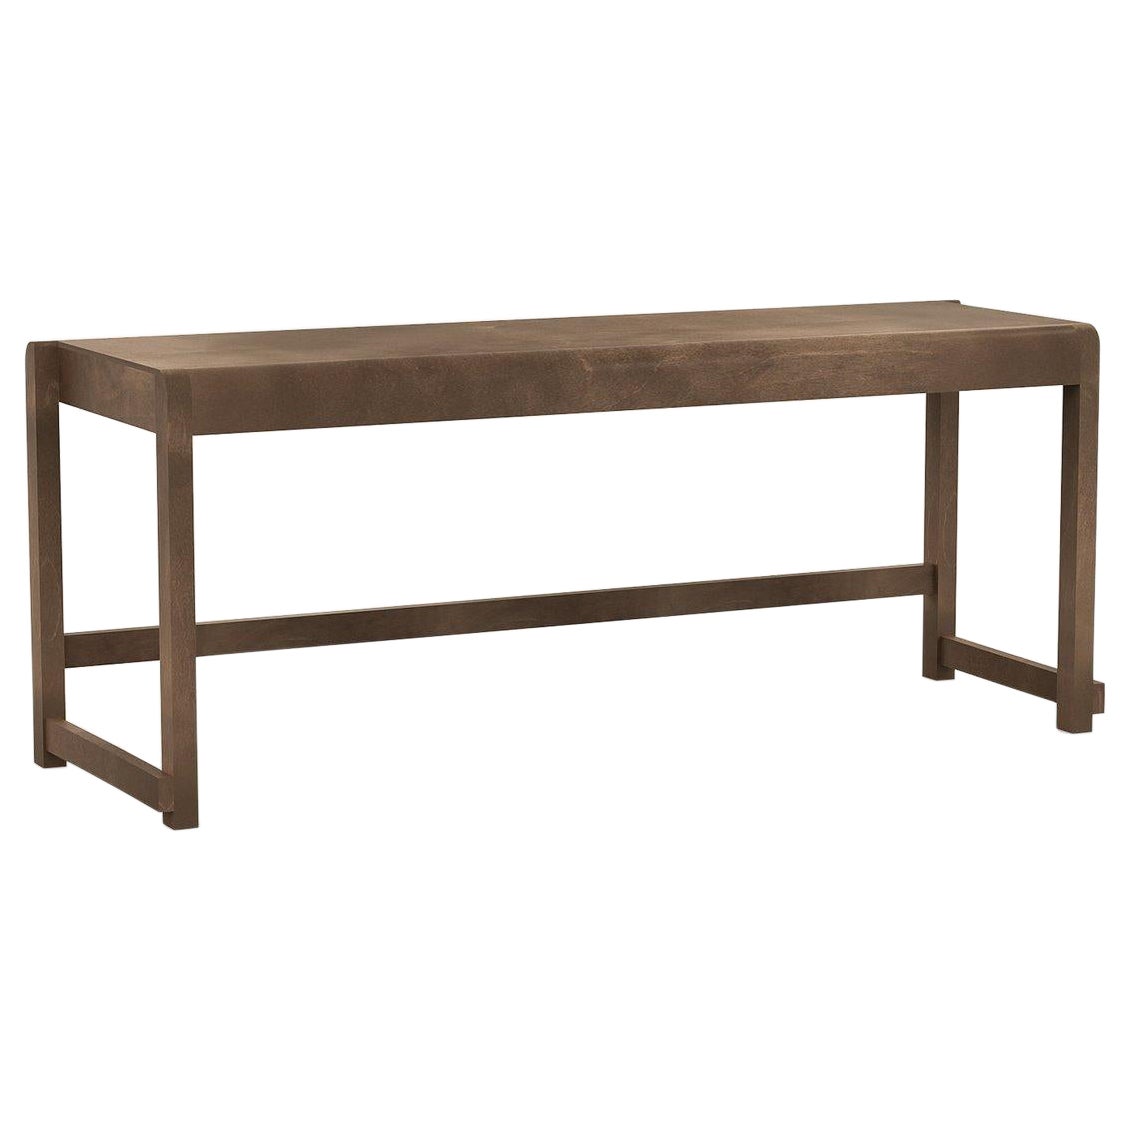 Minimal Scandinavian Design Bench 01 in Dark Wood For Sale